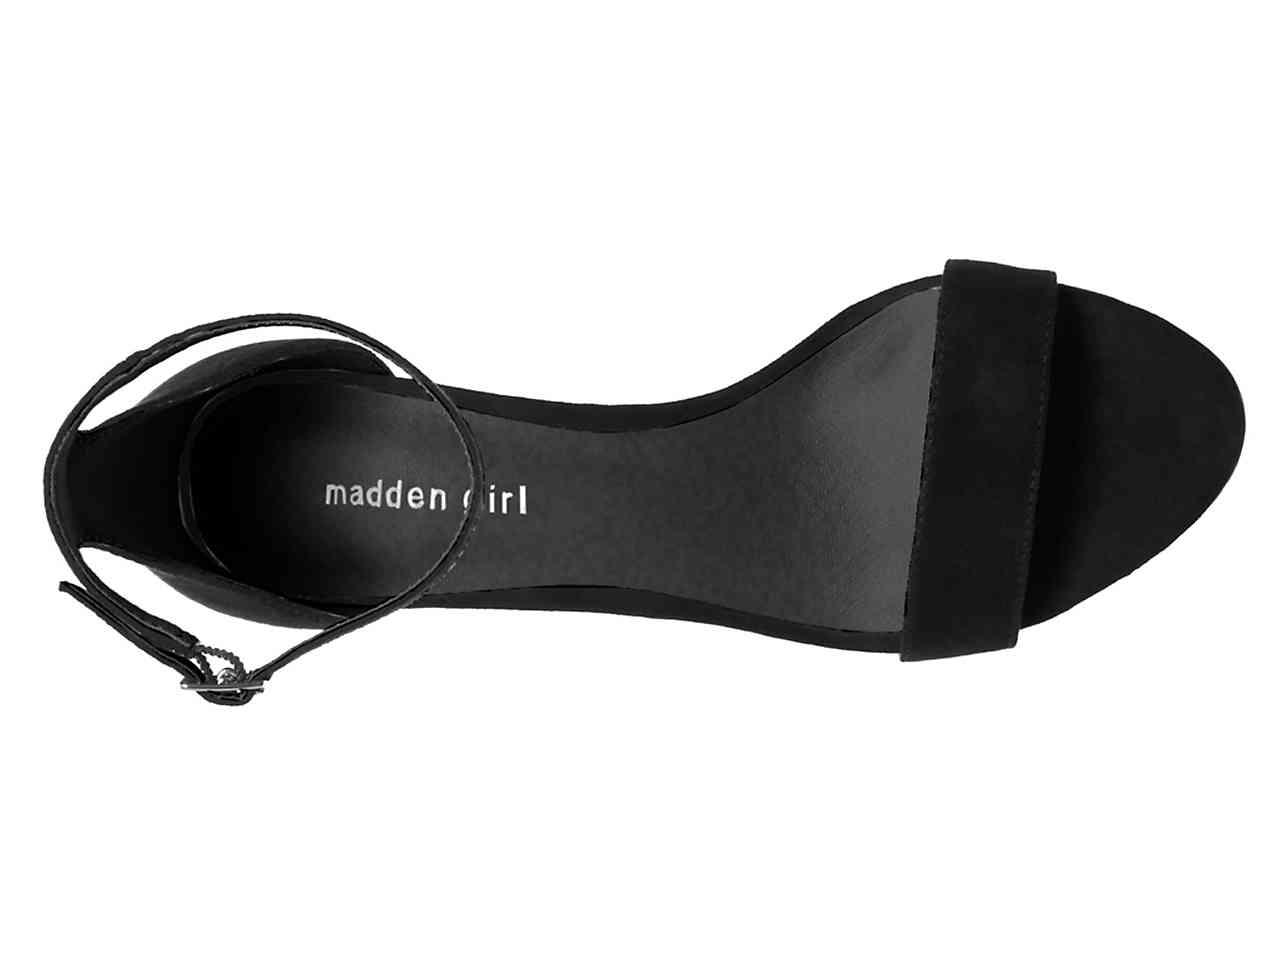 Madden Girl Bang Sandal in Black - Lyst